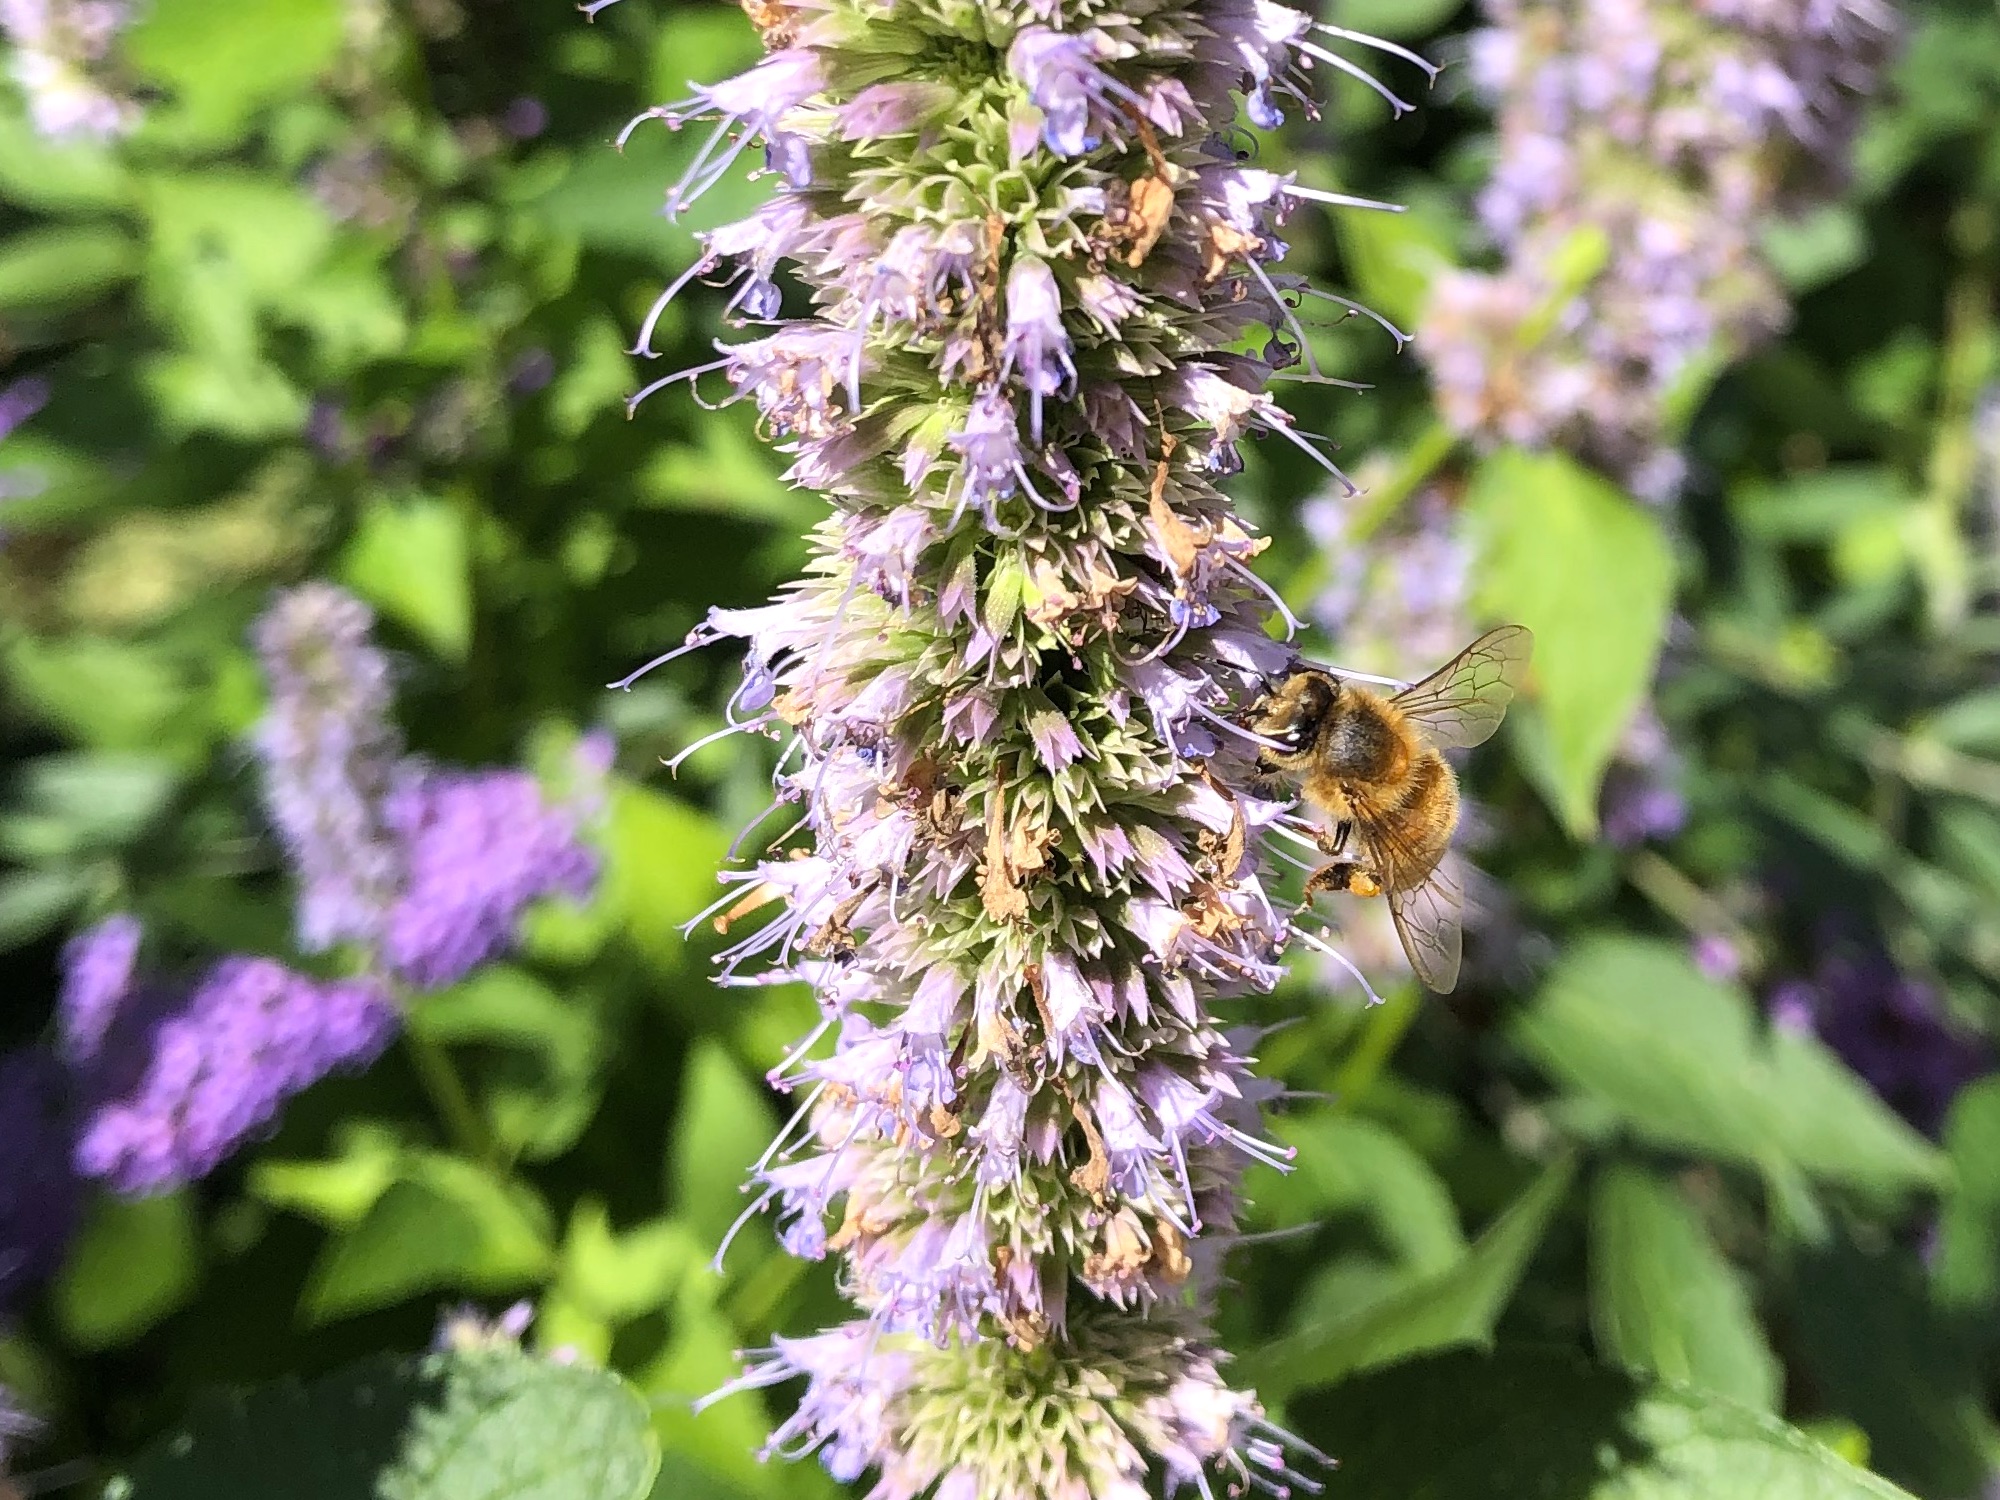 Honeybee on Hyssop on August 18, 2020.